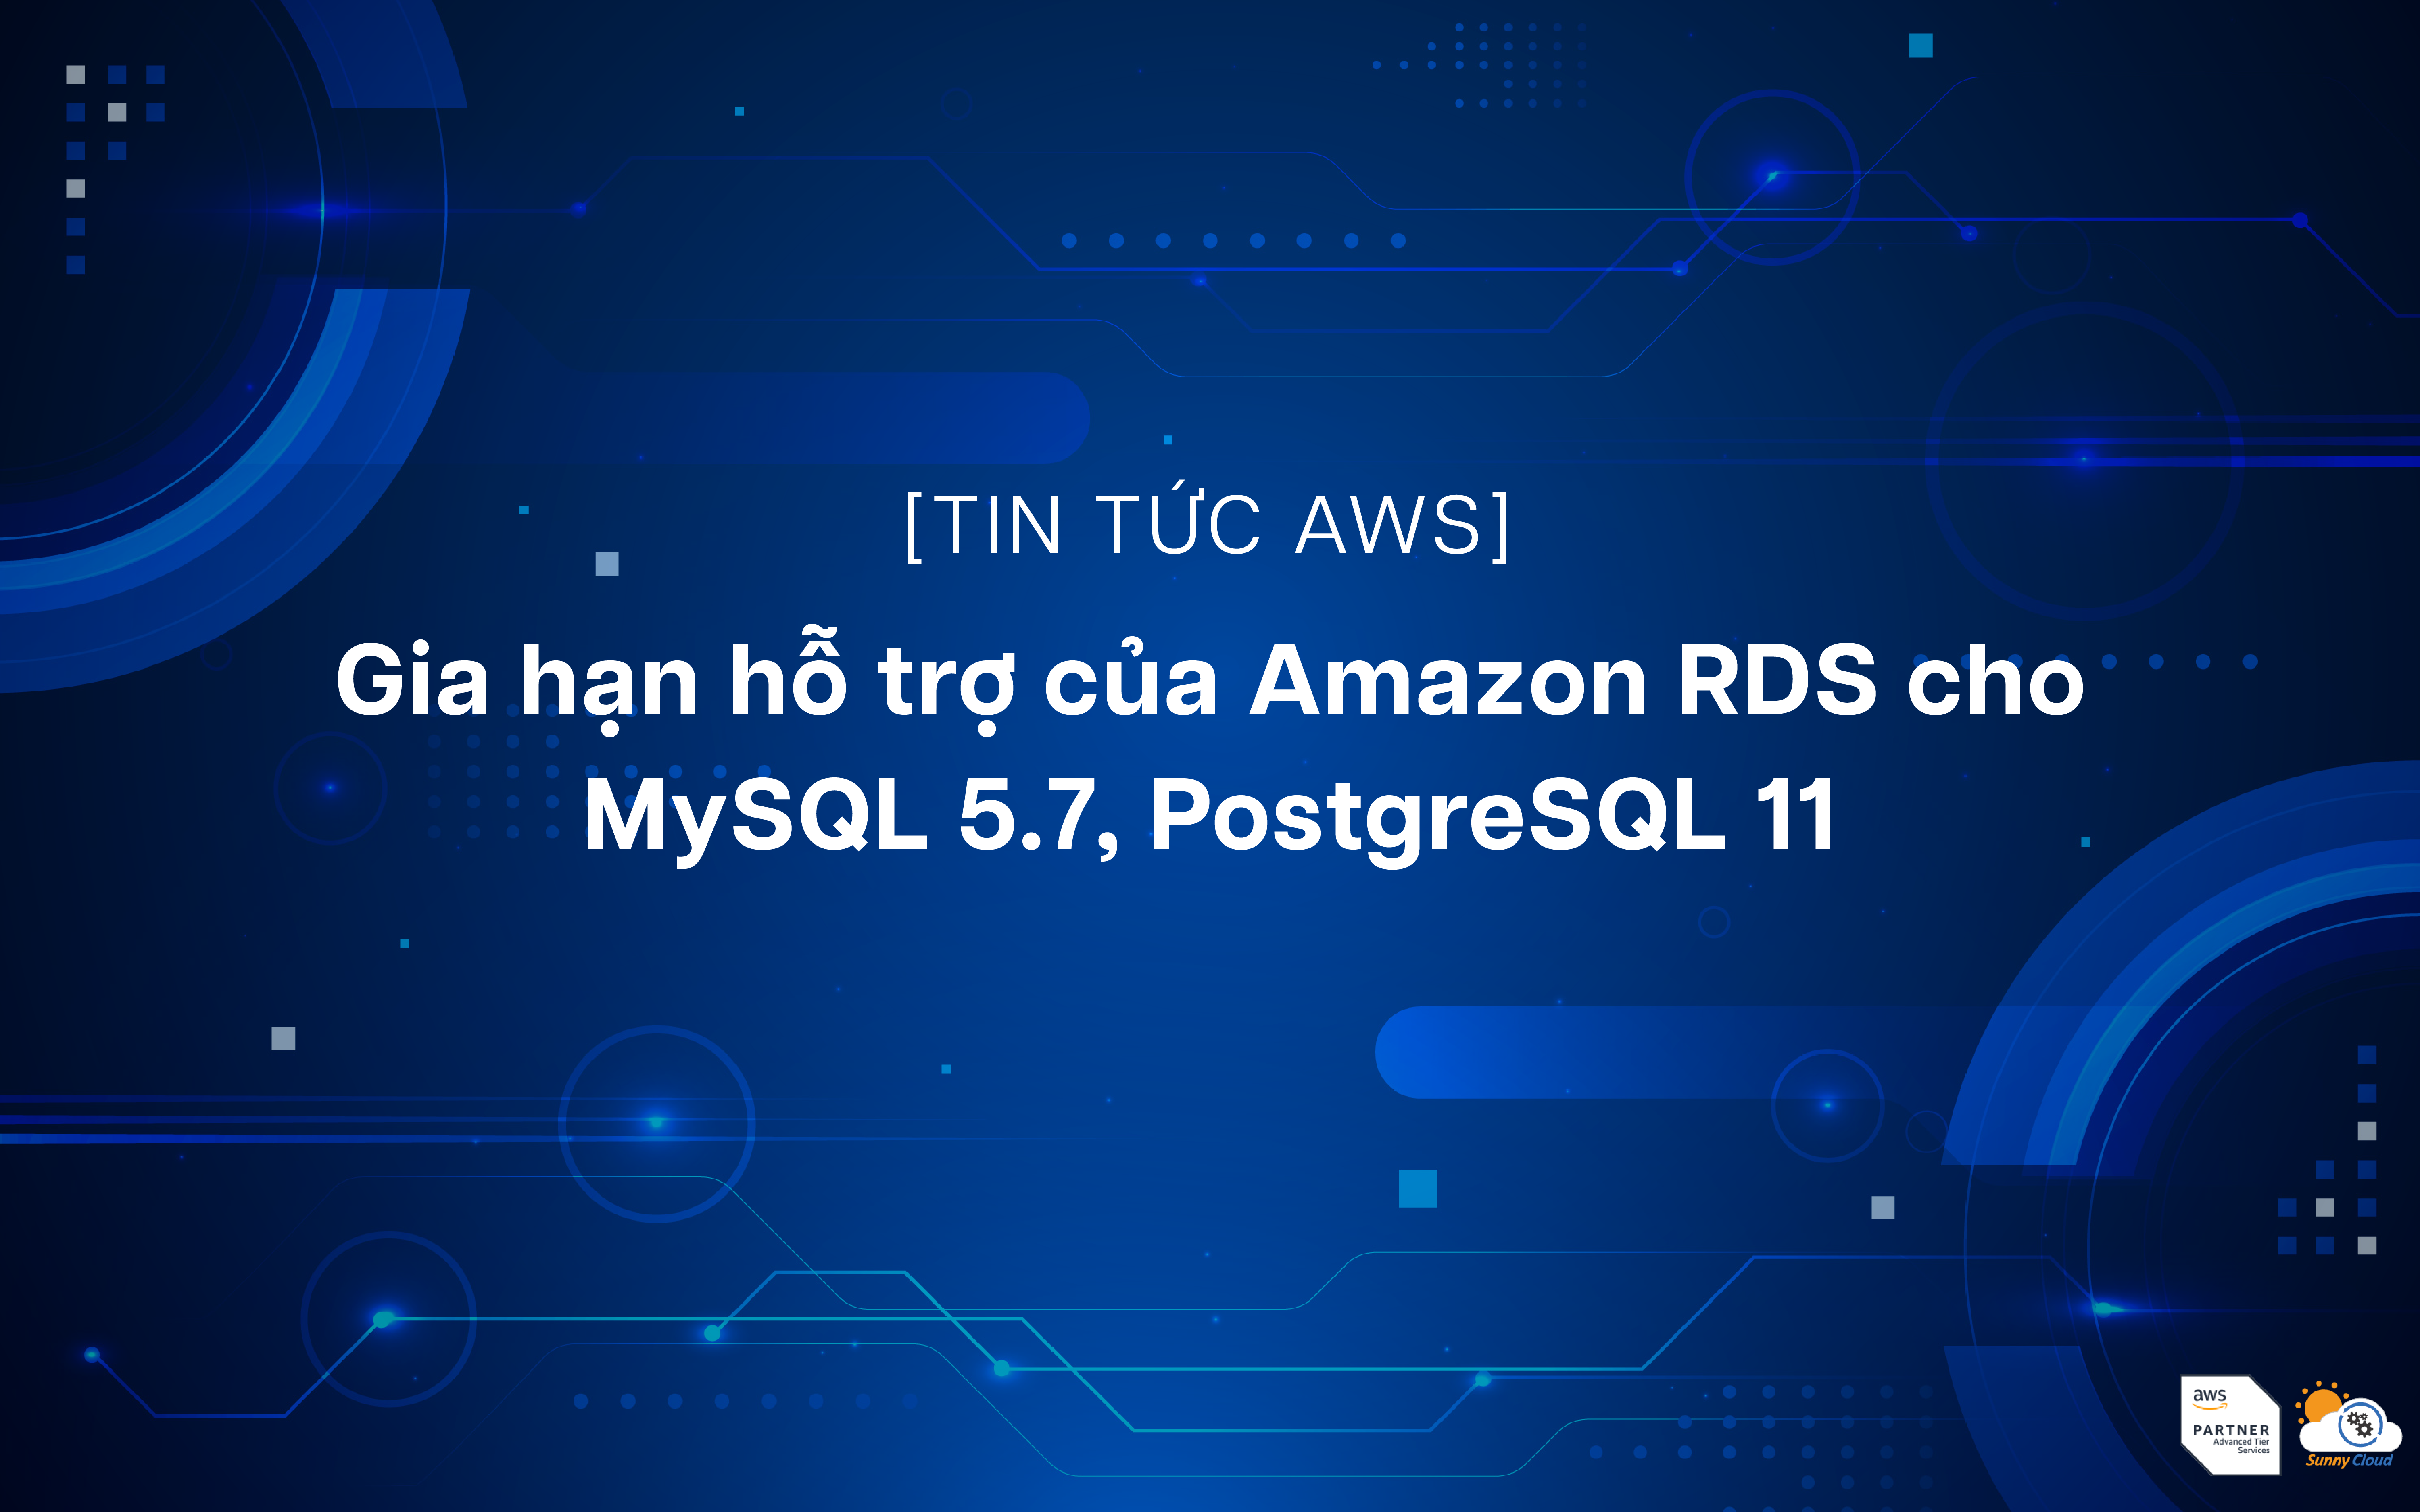 Tính năng gia hạn hỗ trợ của Amazon RDS cho MySQL 5.7, PostgreSQL 11